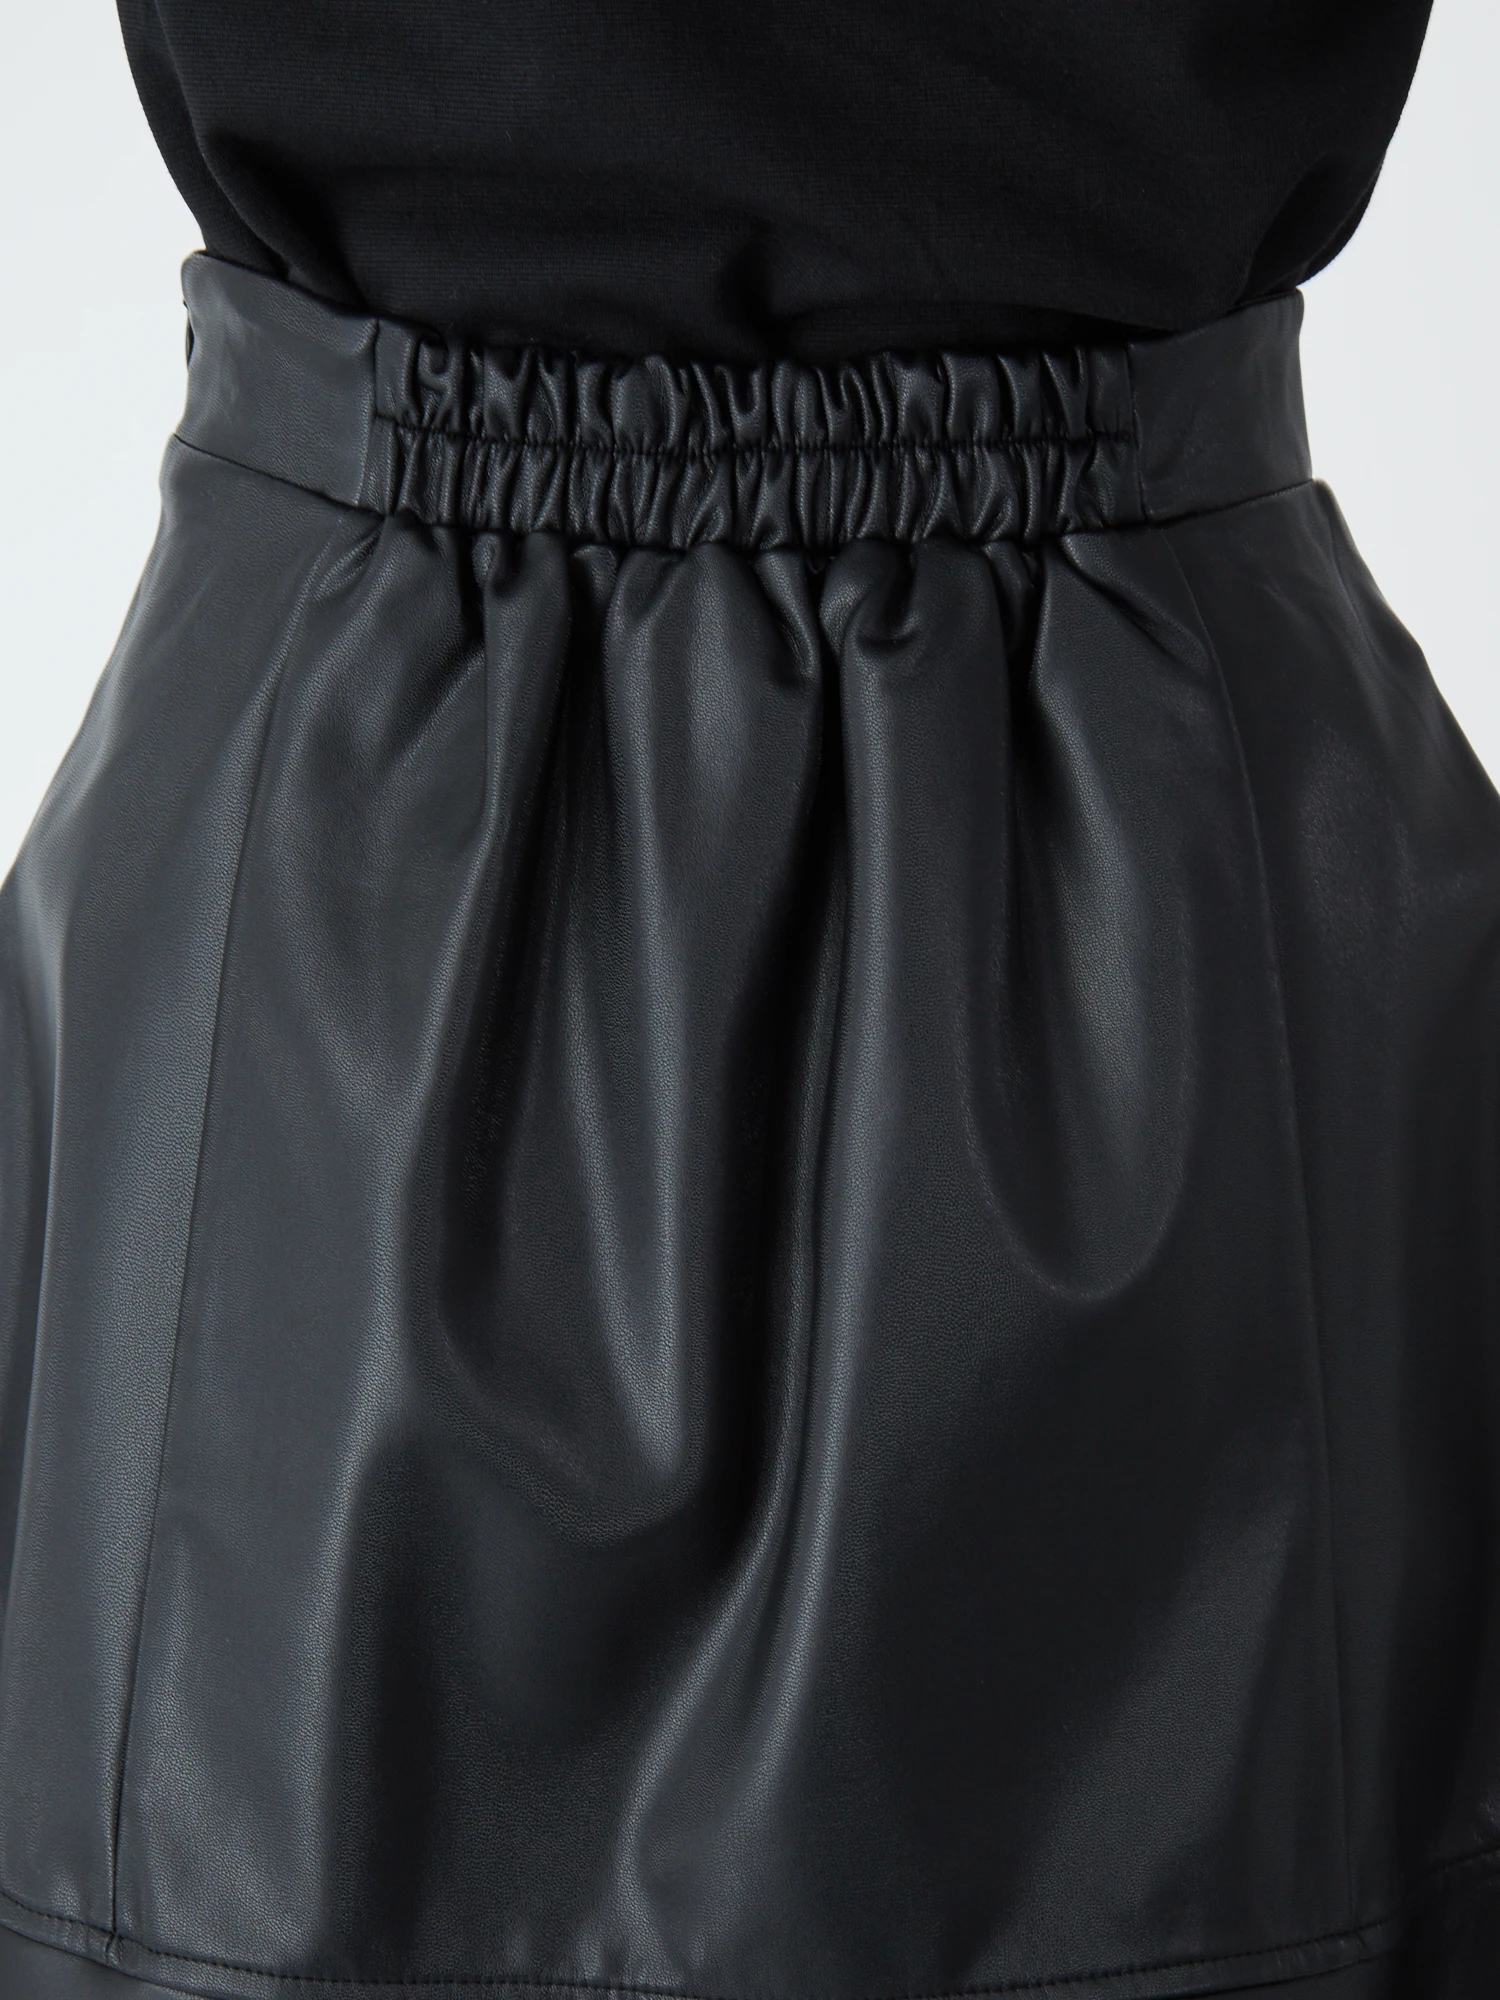 ウエストリボンフレアーヘムSK - Ank Rouge(アンクルージュ)のスカート 